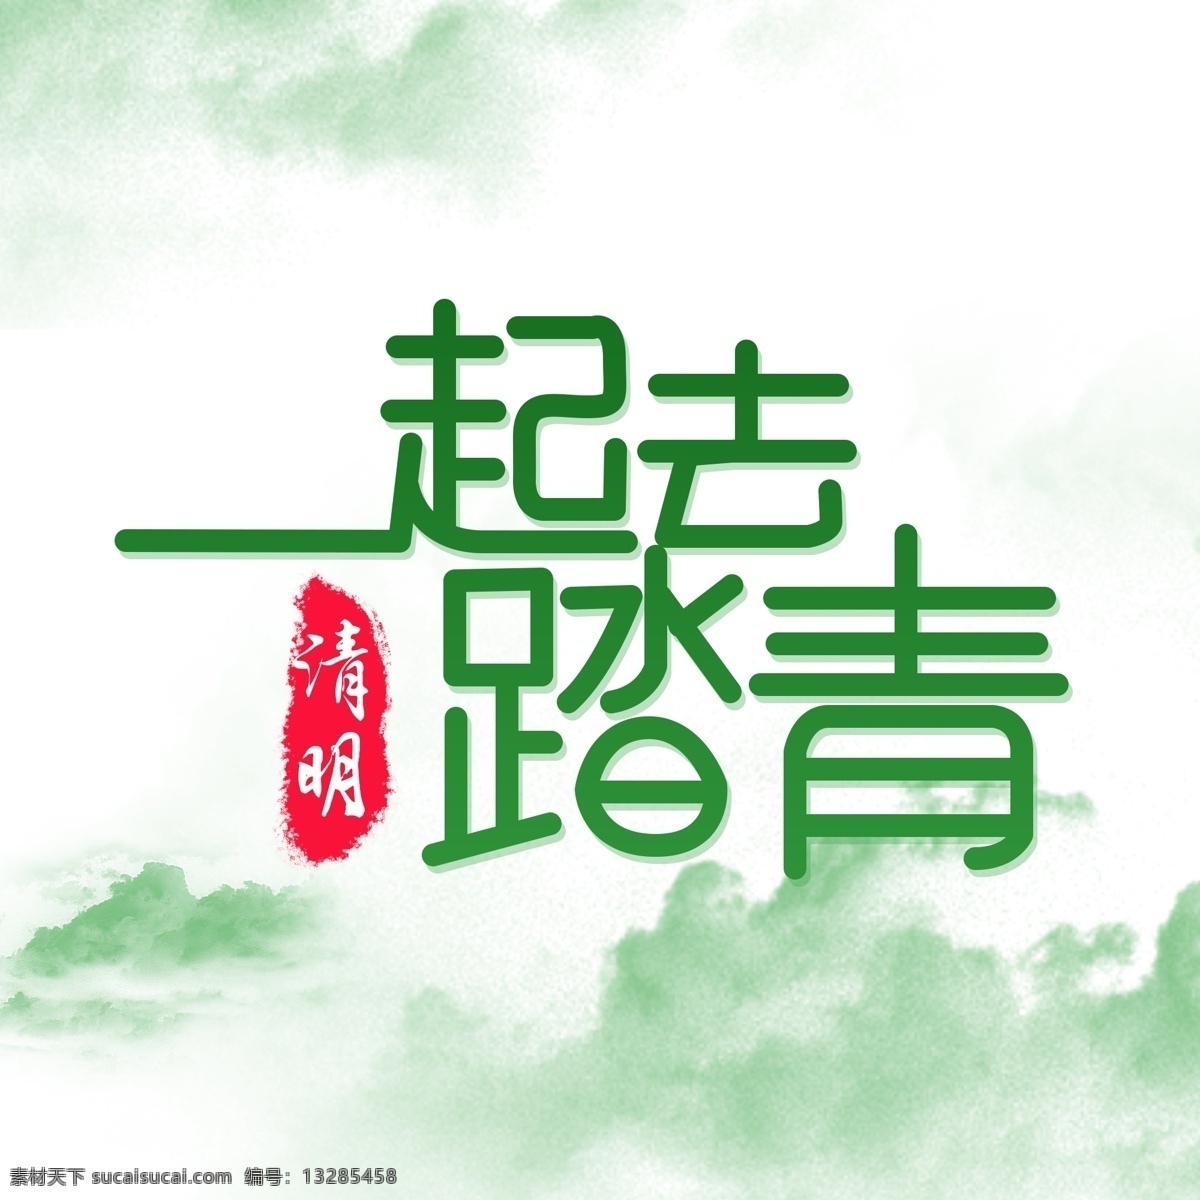 清明节 踏青 活动 字体 海报 字体设计 简约 绿色